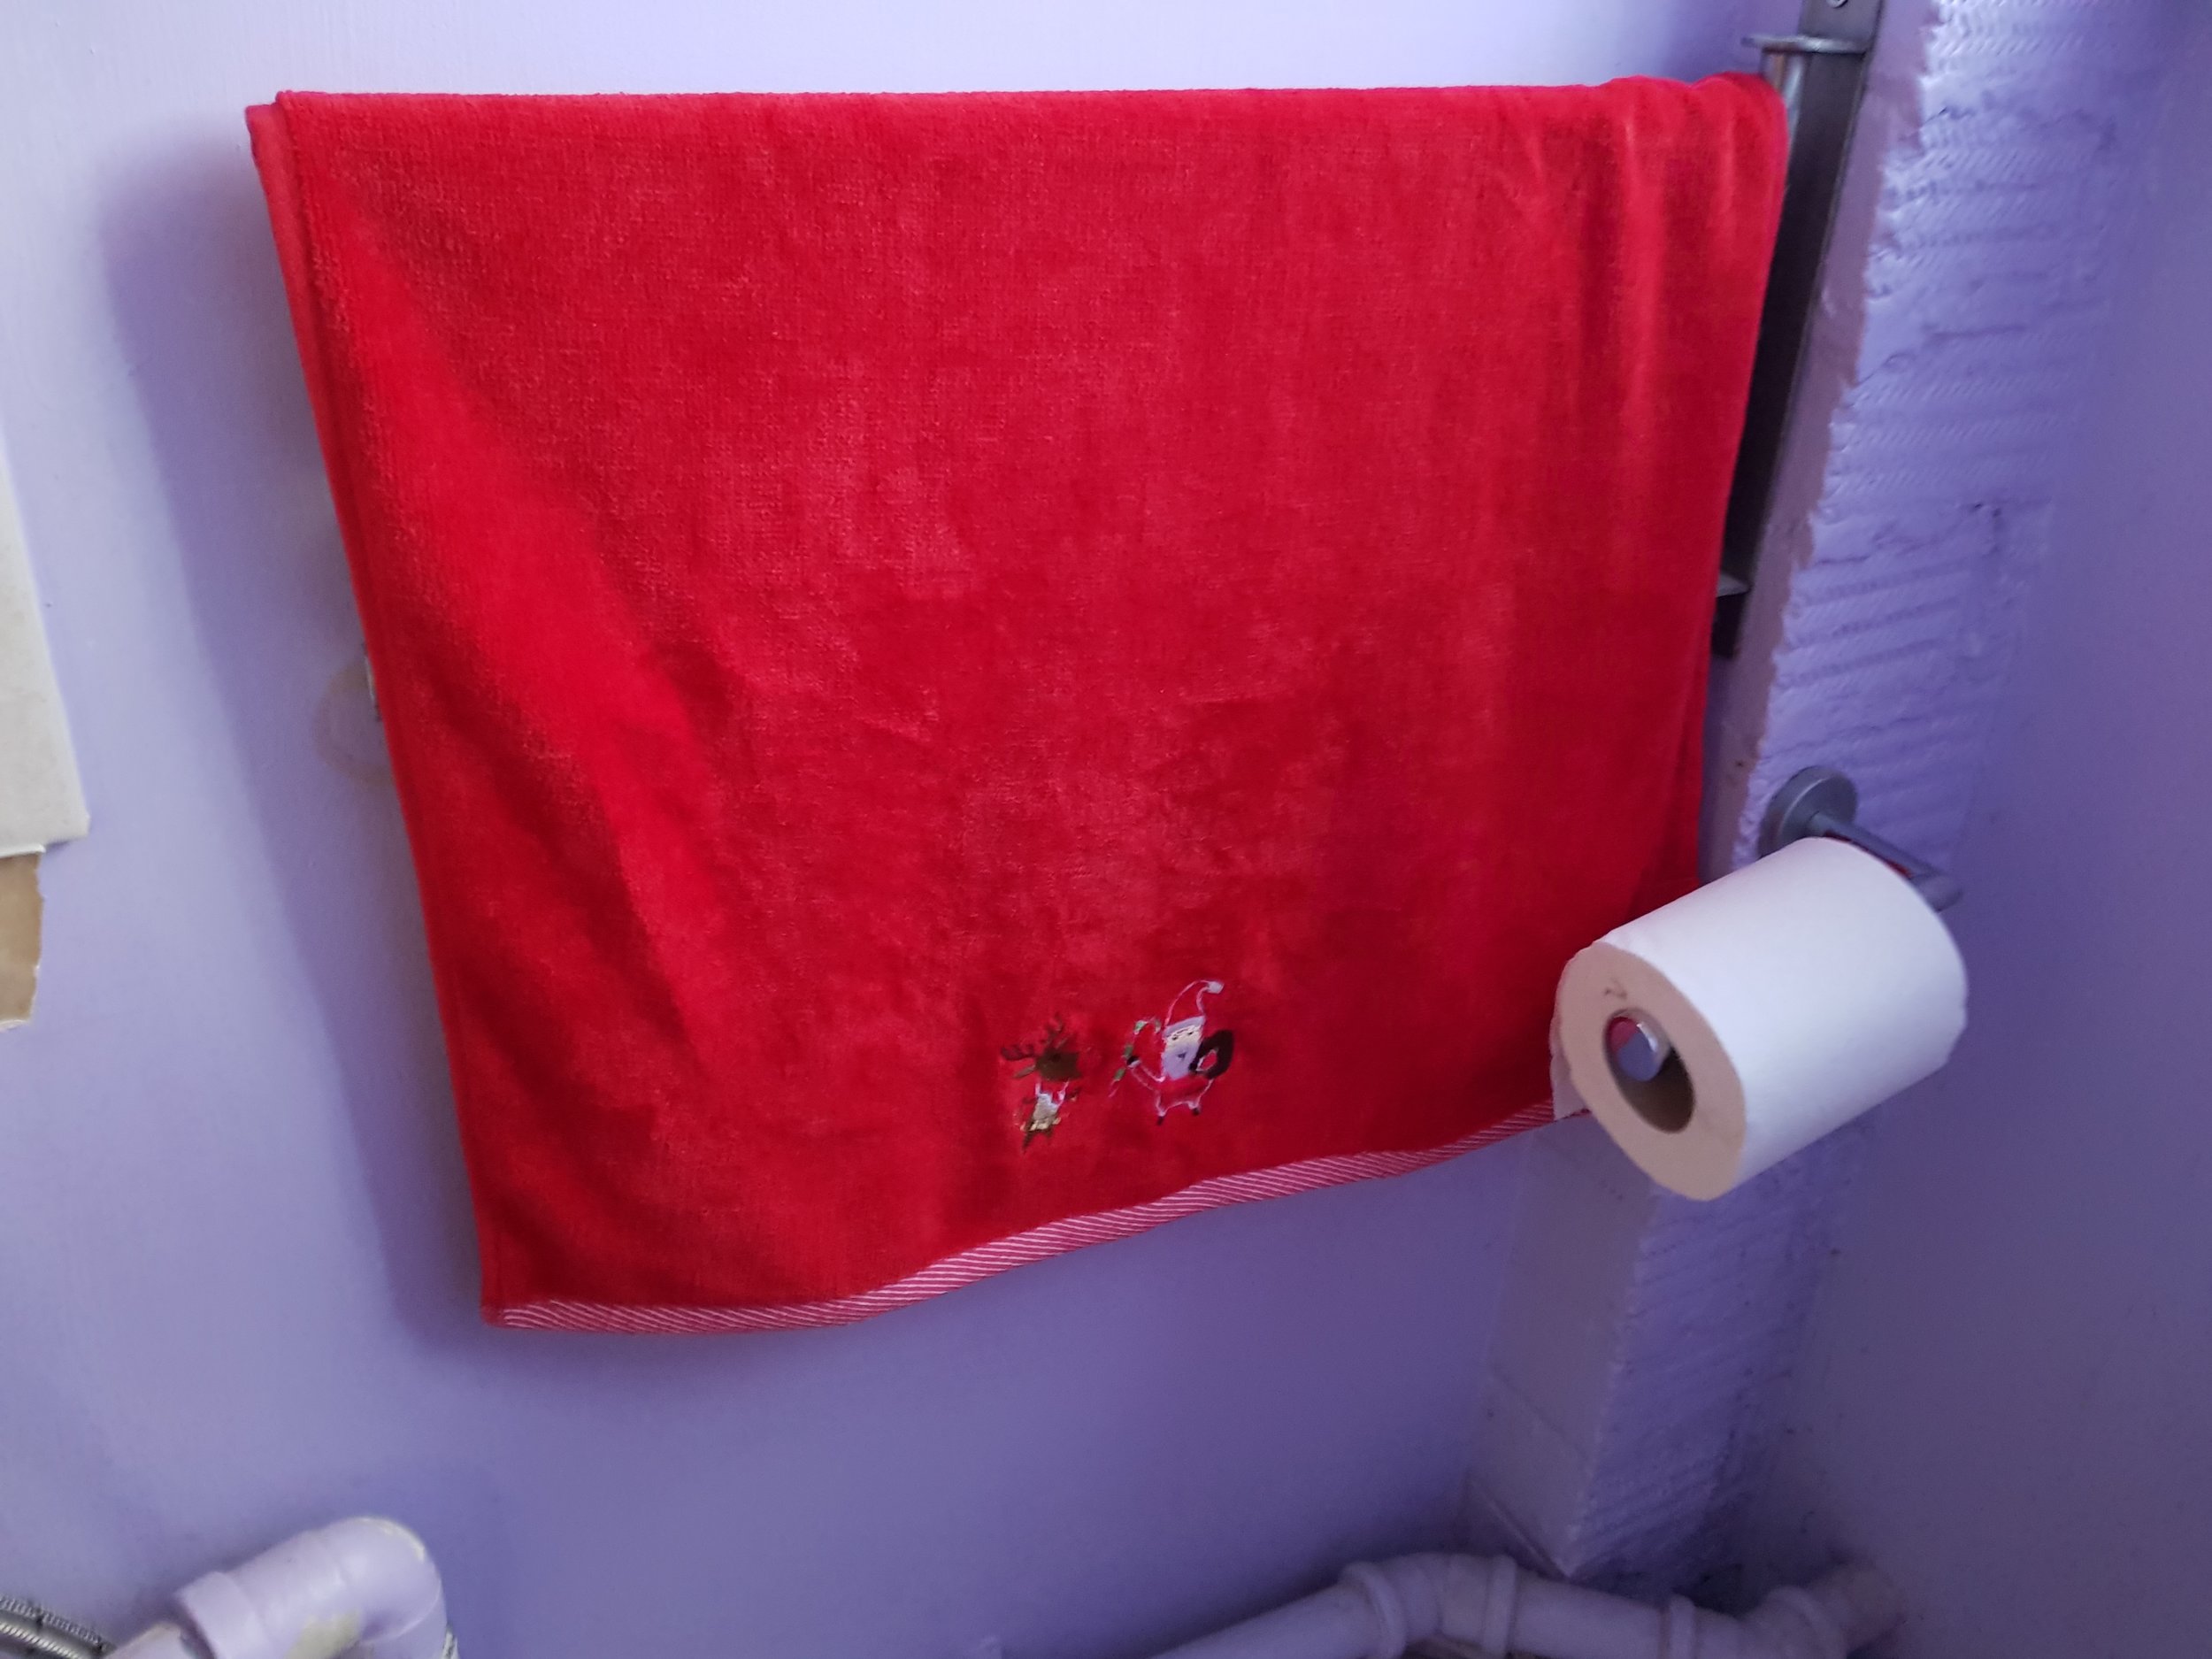 Red Santa and reindeer hand towel